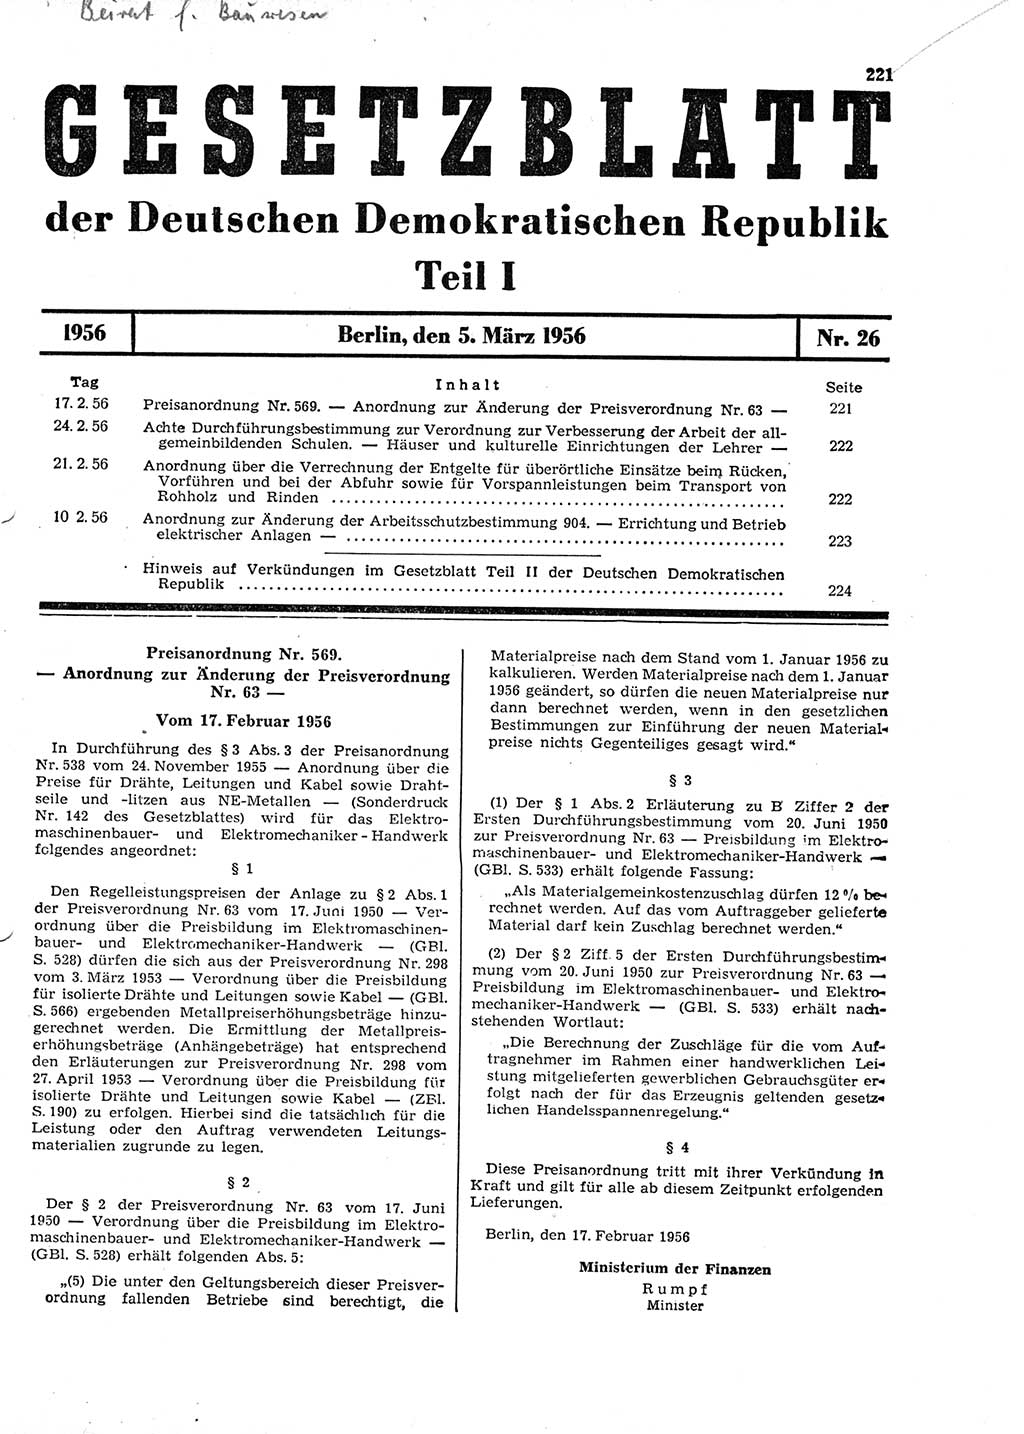 Gesetzblatt (GBl.) der Deutschen Demokratischen Republik (DDR) Teil Ⅰ 1956, Seite 221 (GBl. DDR Ⅰ 1956, S. 221)